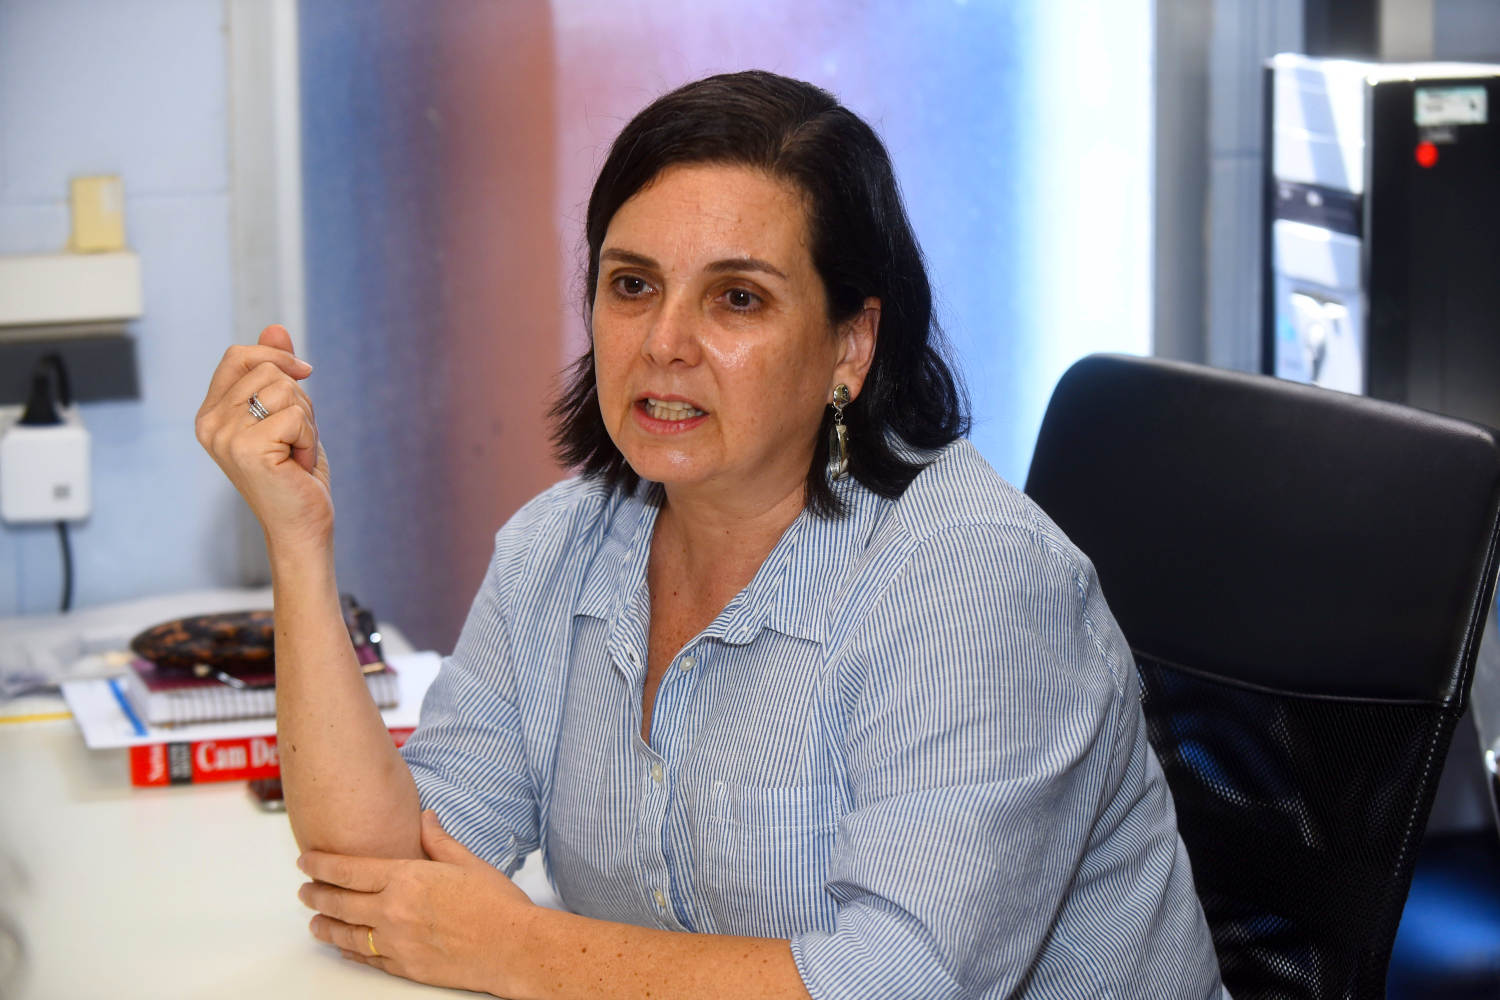 audiodescrição: fotografia colorida mostra professora Kátia Lucchesi, sentada à mesa, enquanto dá entrevista.